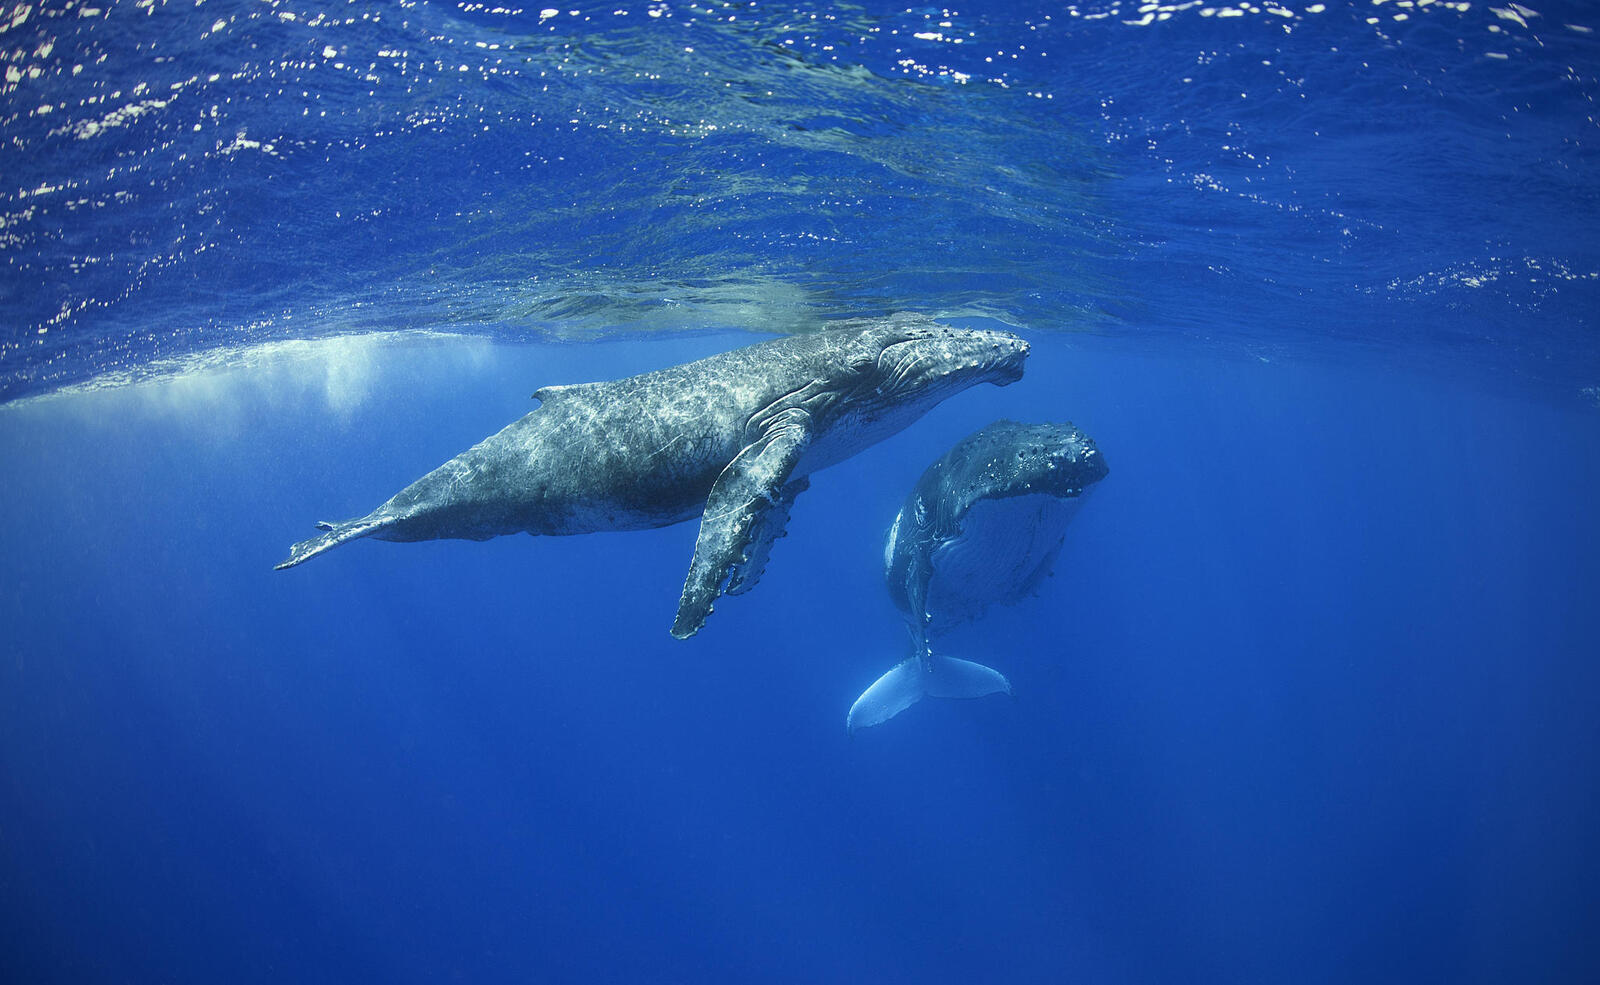 桌面上的壁纸小座头鲸和它的母亲在一起 海生物 海